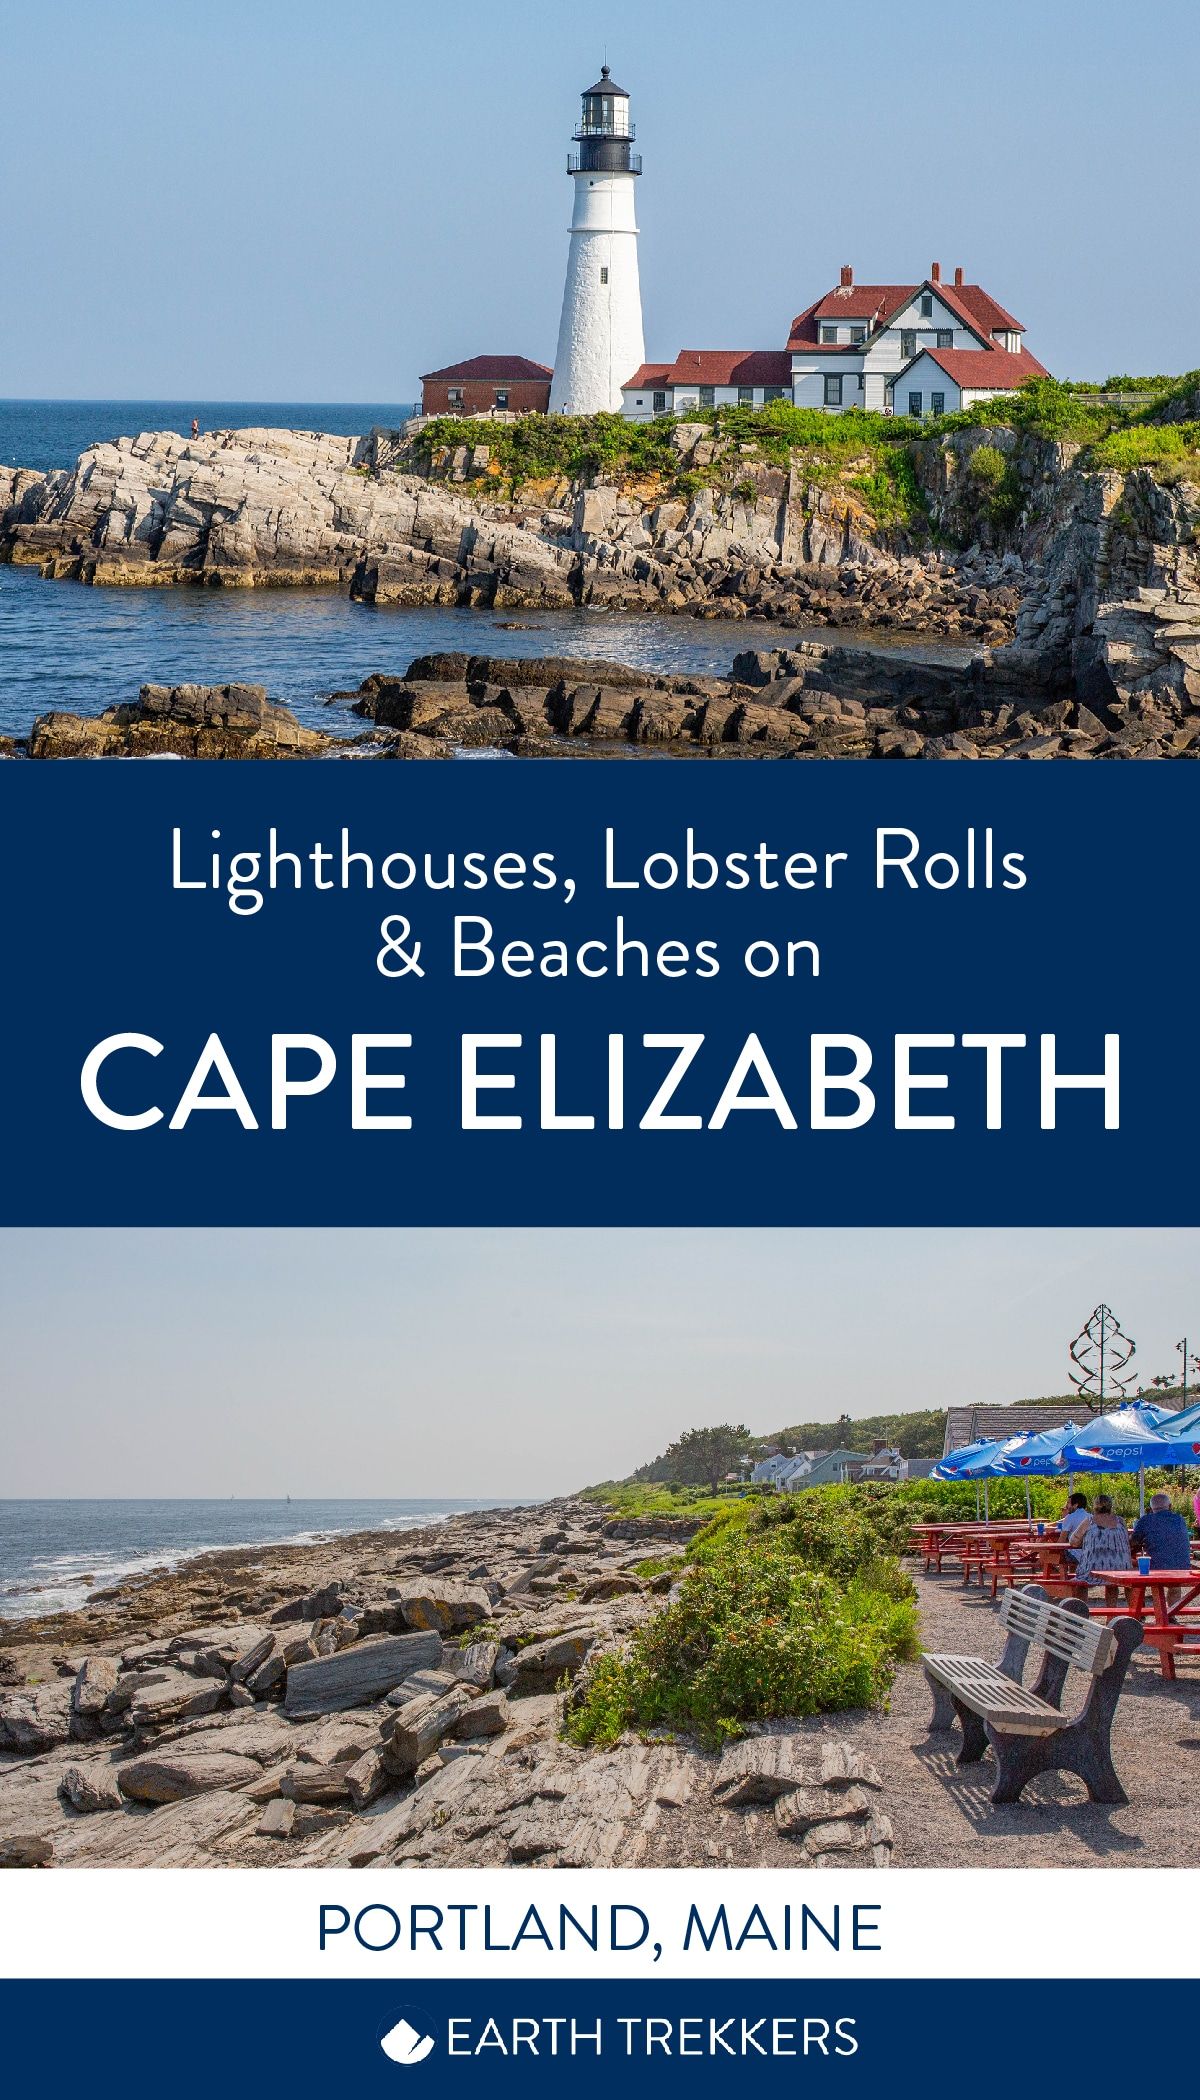 Cape Elizabeth